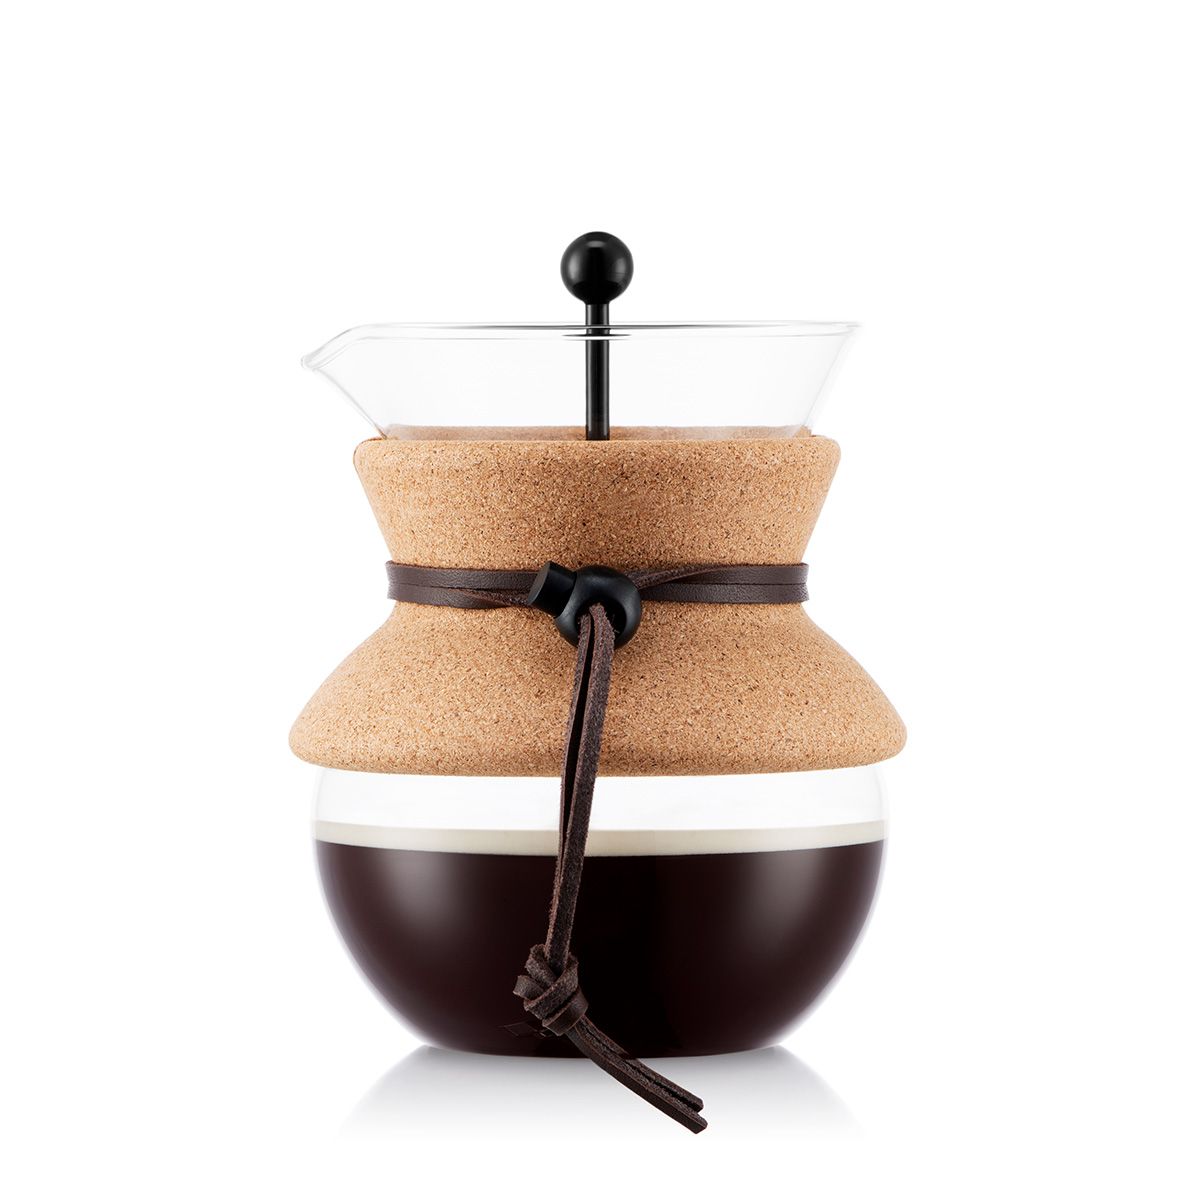 Bodum häll över kaffebryggare med permanent kaffefilterkork, 4 koppar